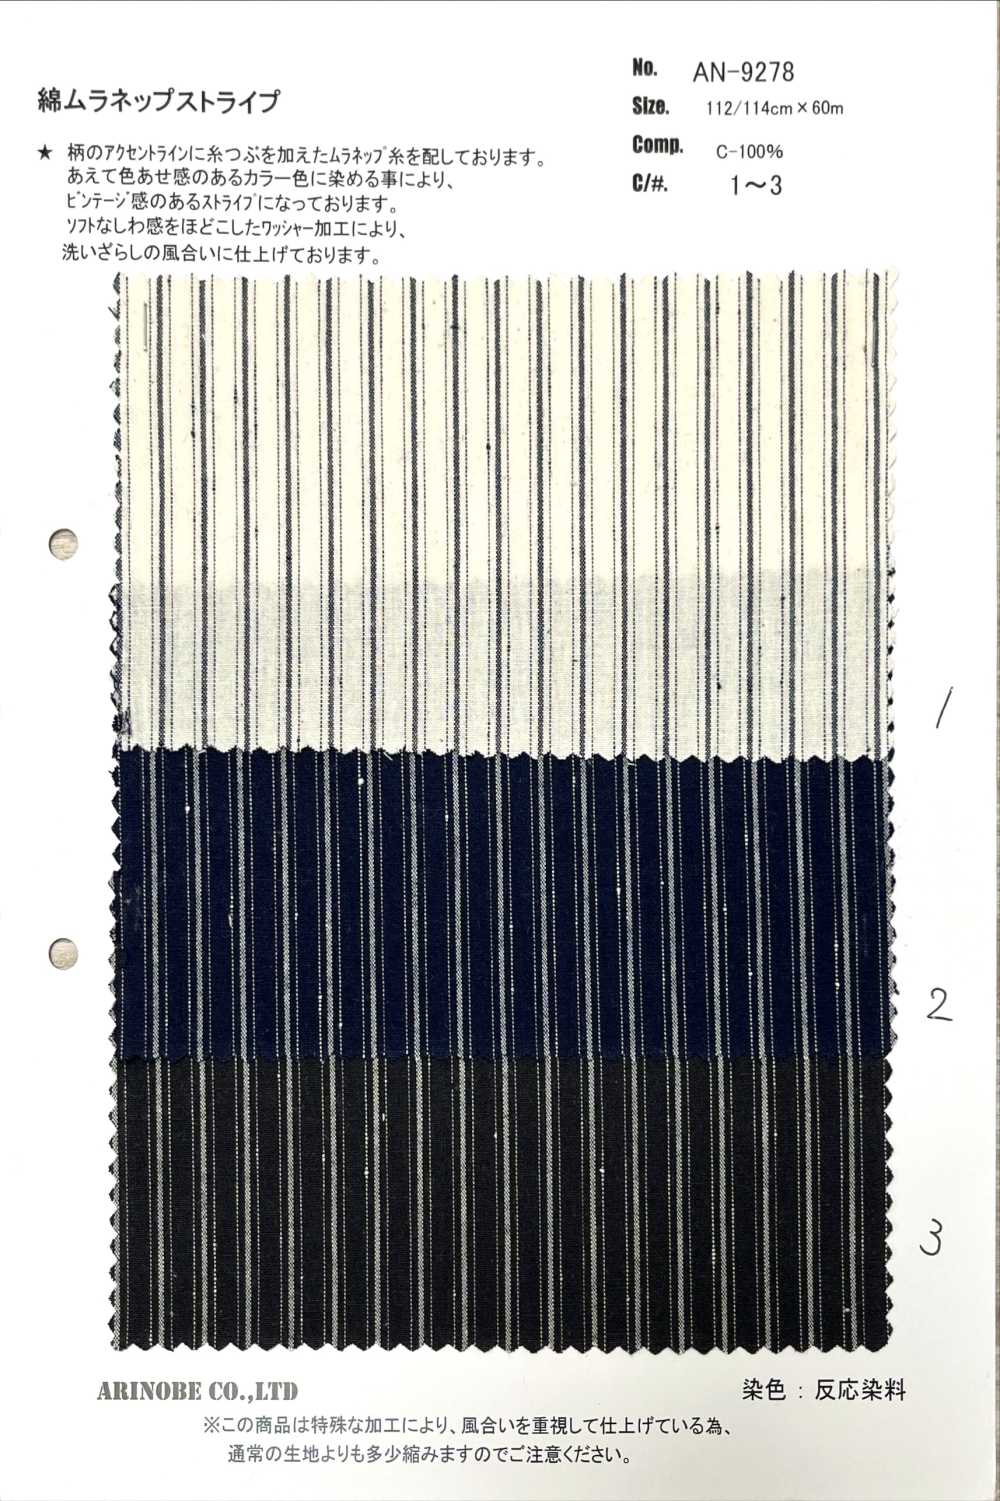 AN-9278 Baumwolle Muranep Streifen[Textilgewebe] ARINOBE CO., LTD.